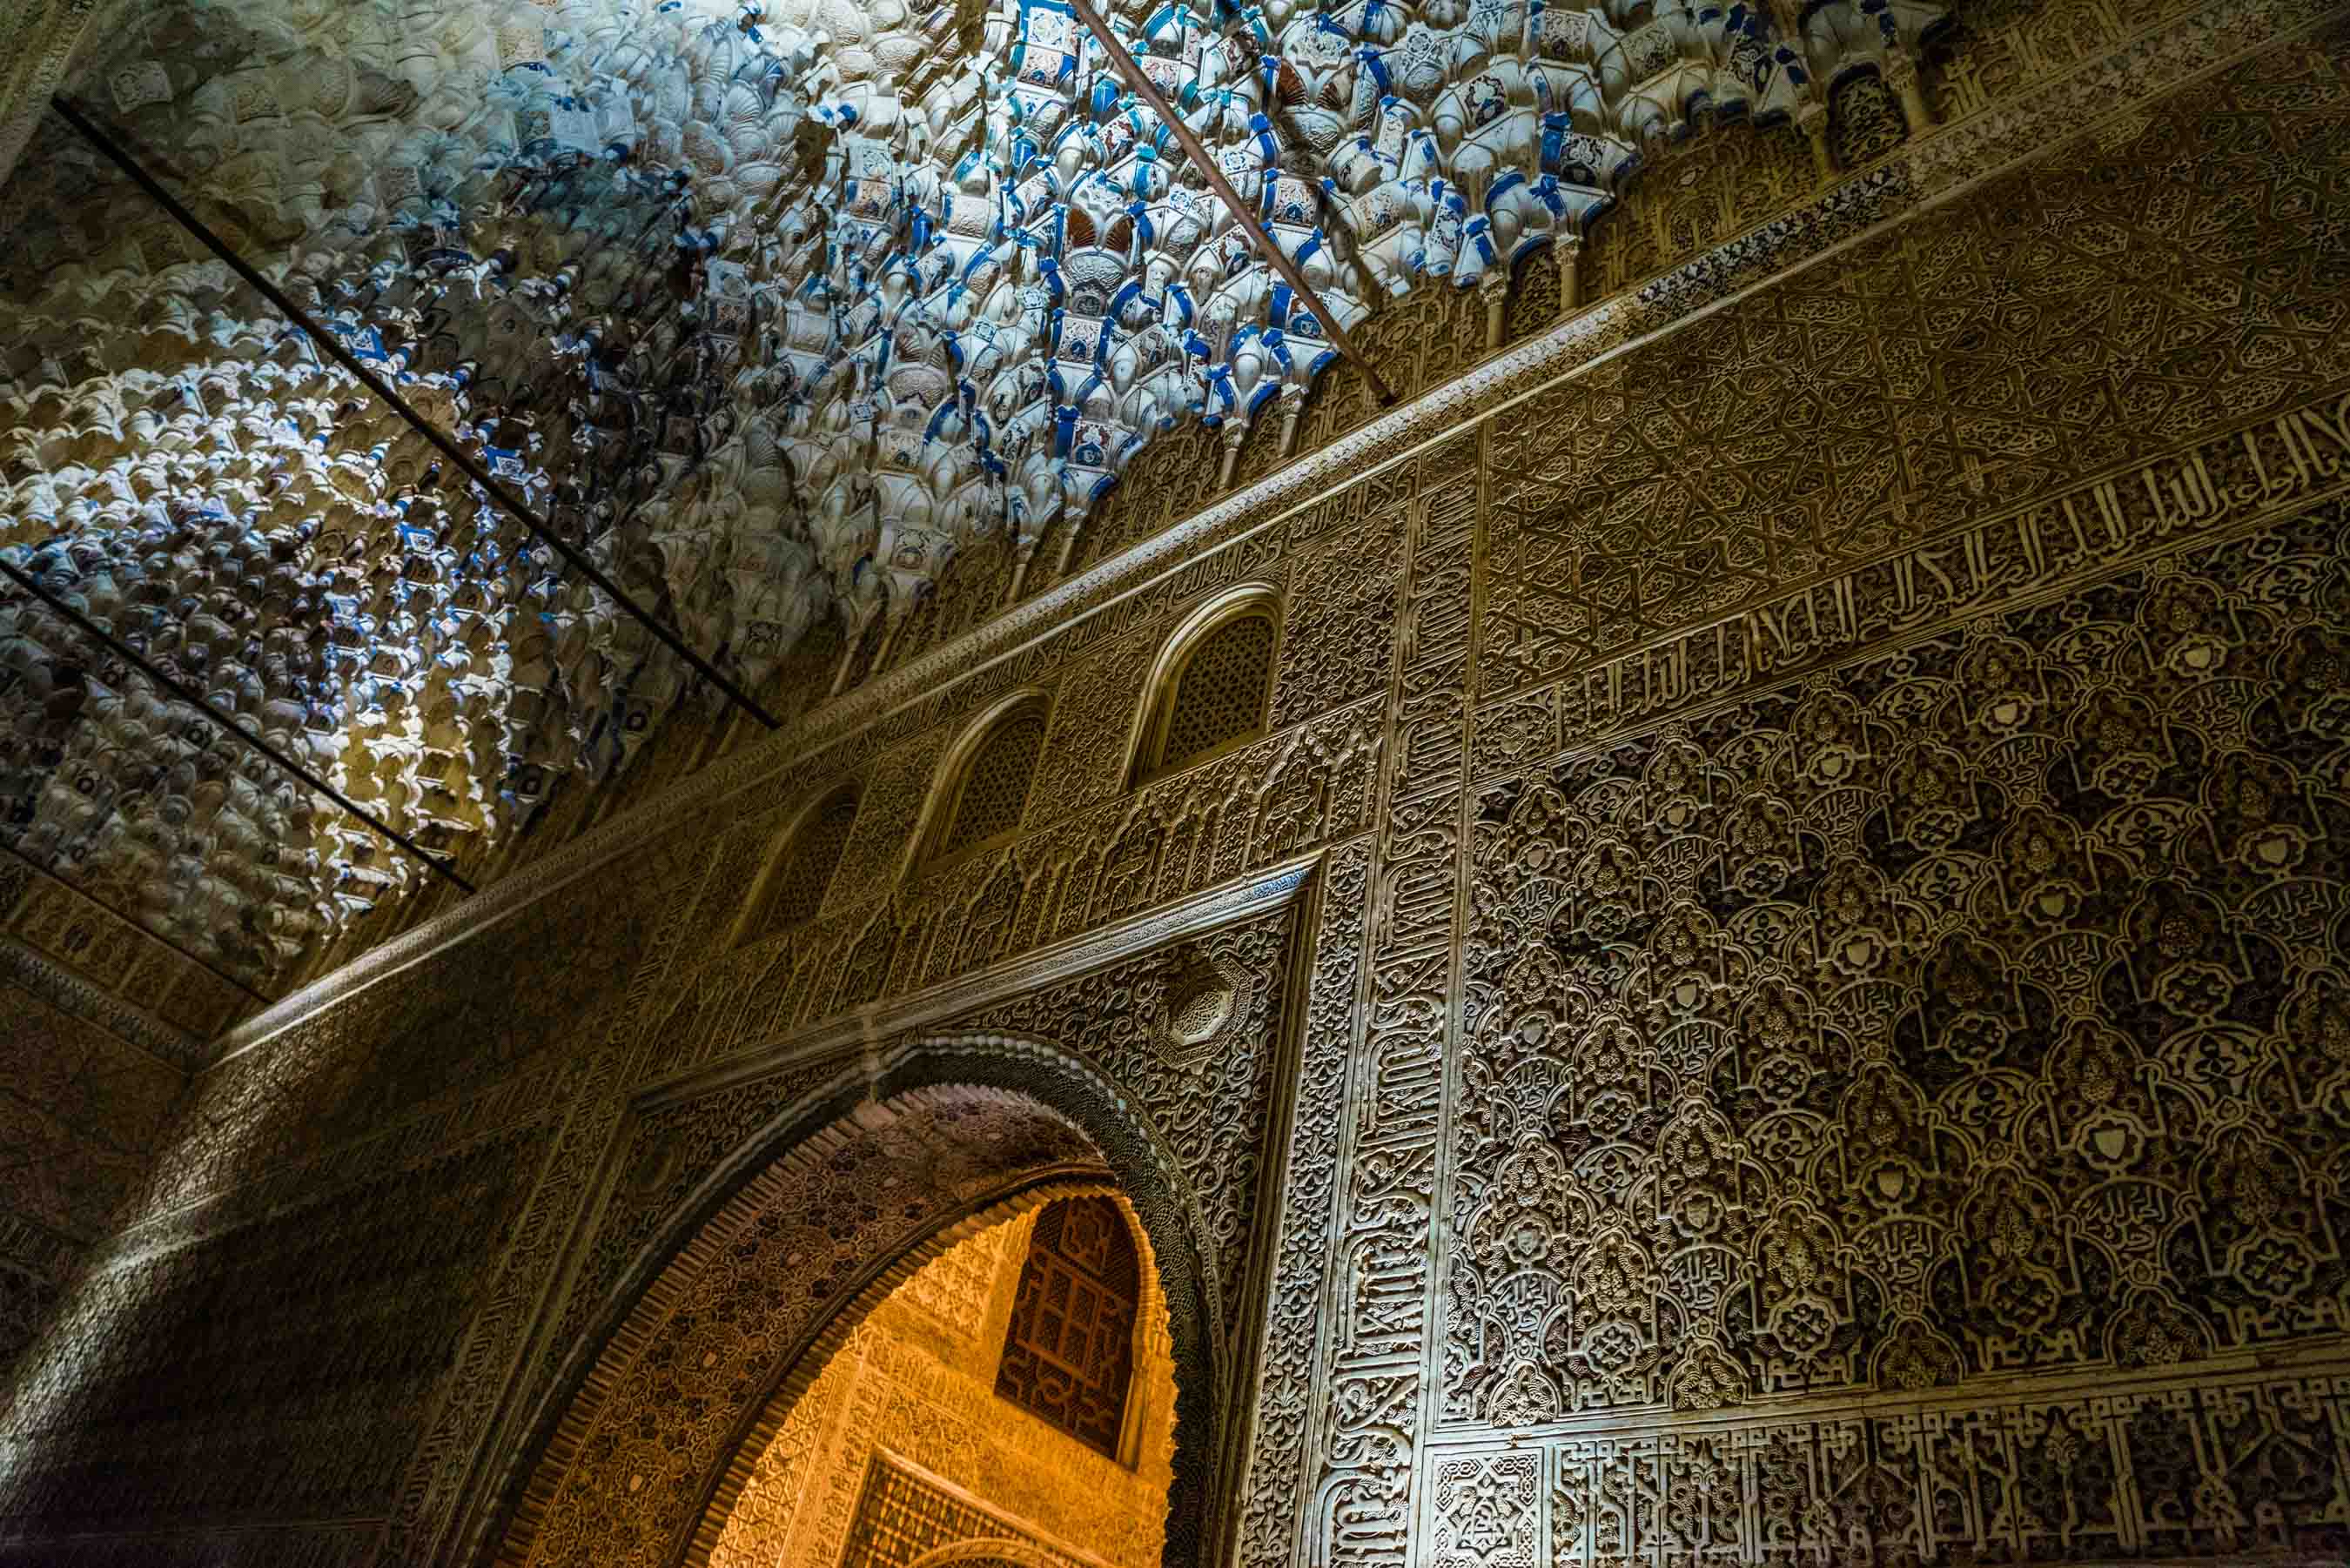 Granada Alhambra - by night - details